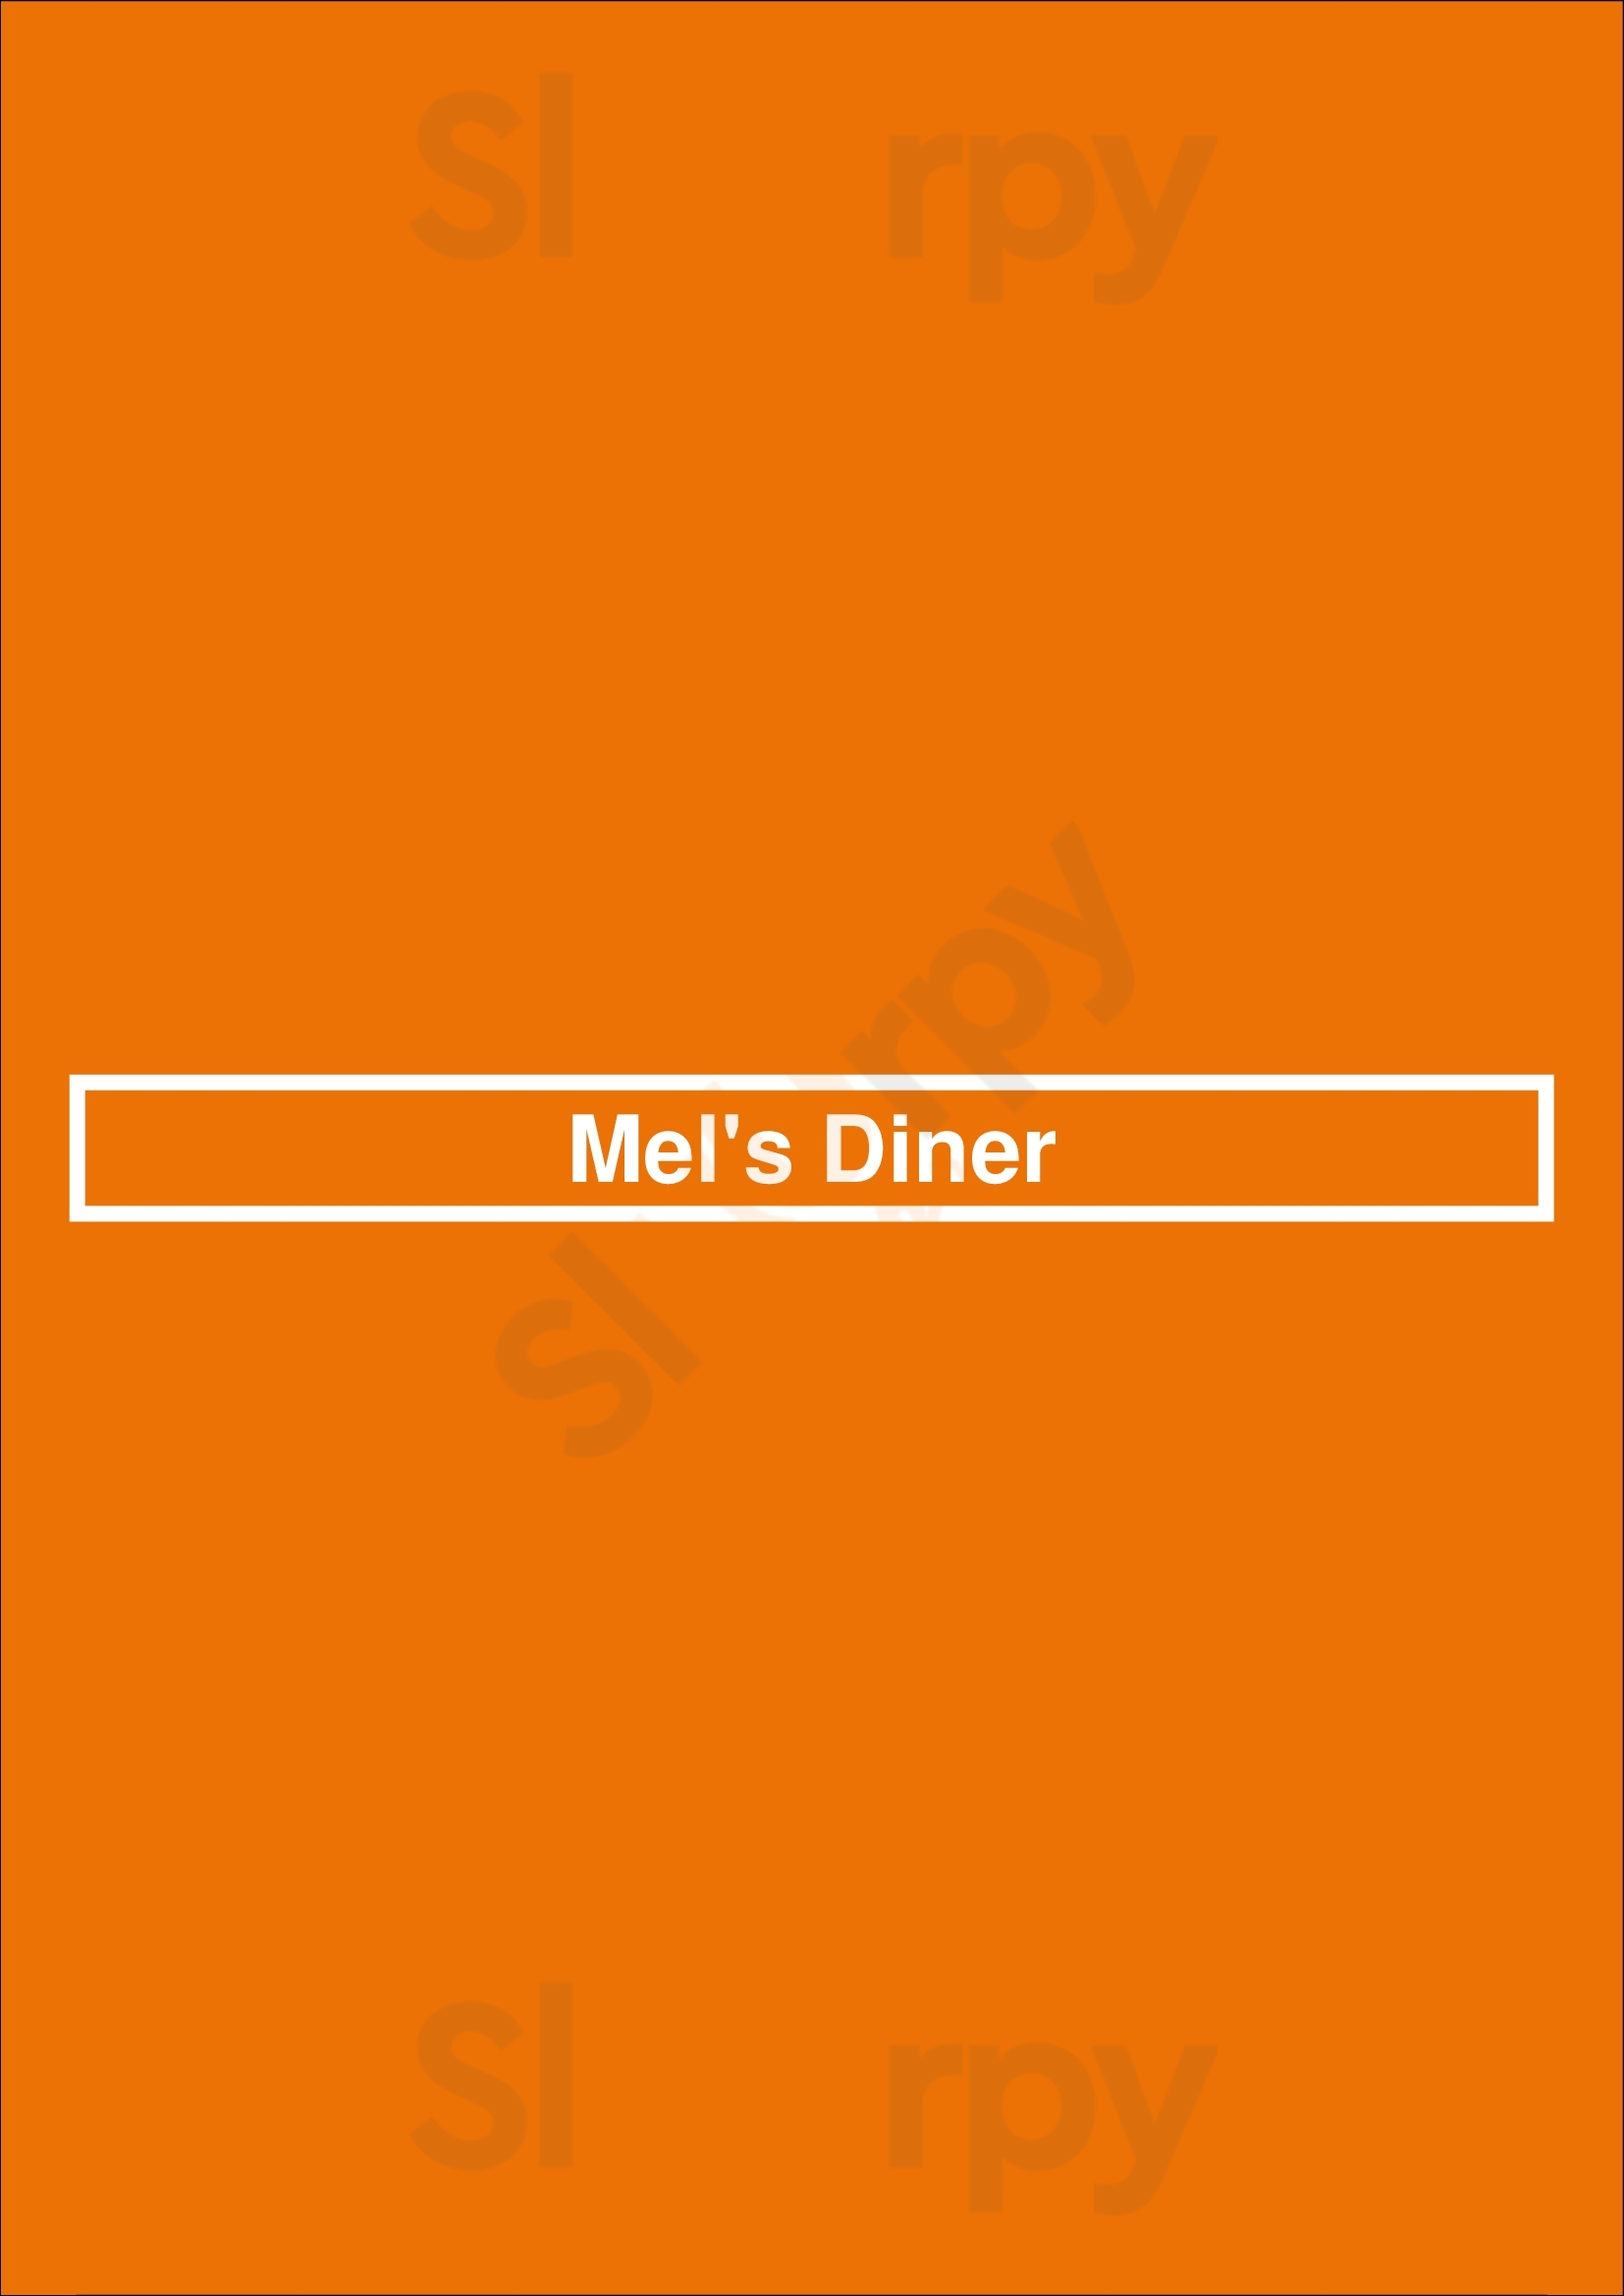 Mel's Diner Waterloo Menu - 1